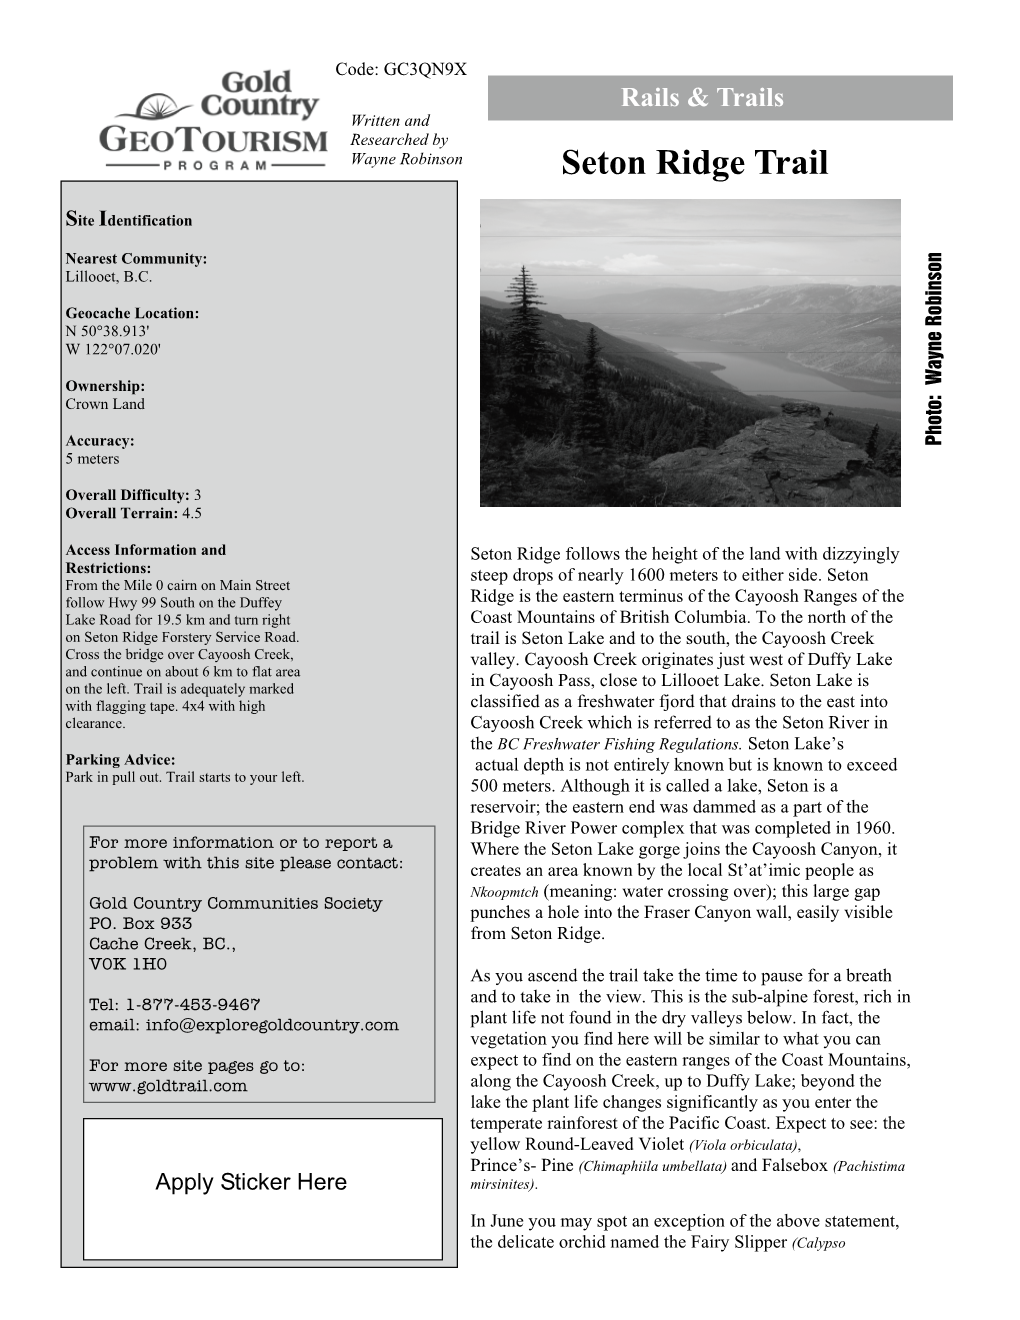 Seton Ridge Trail